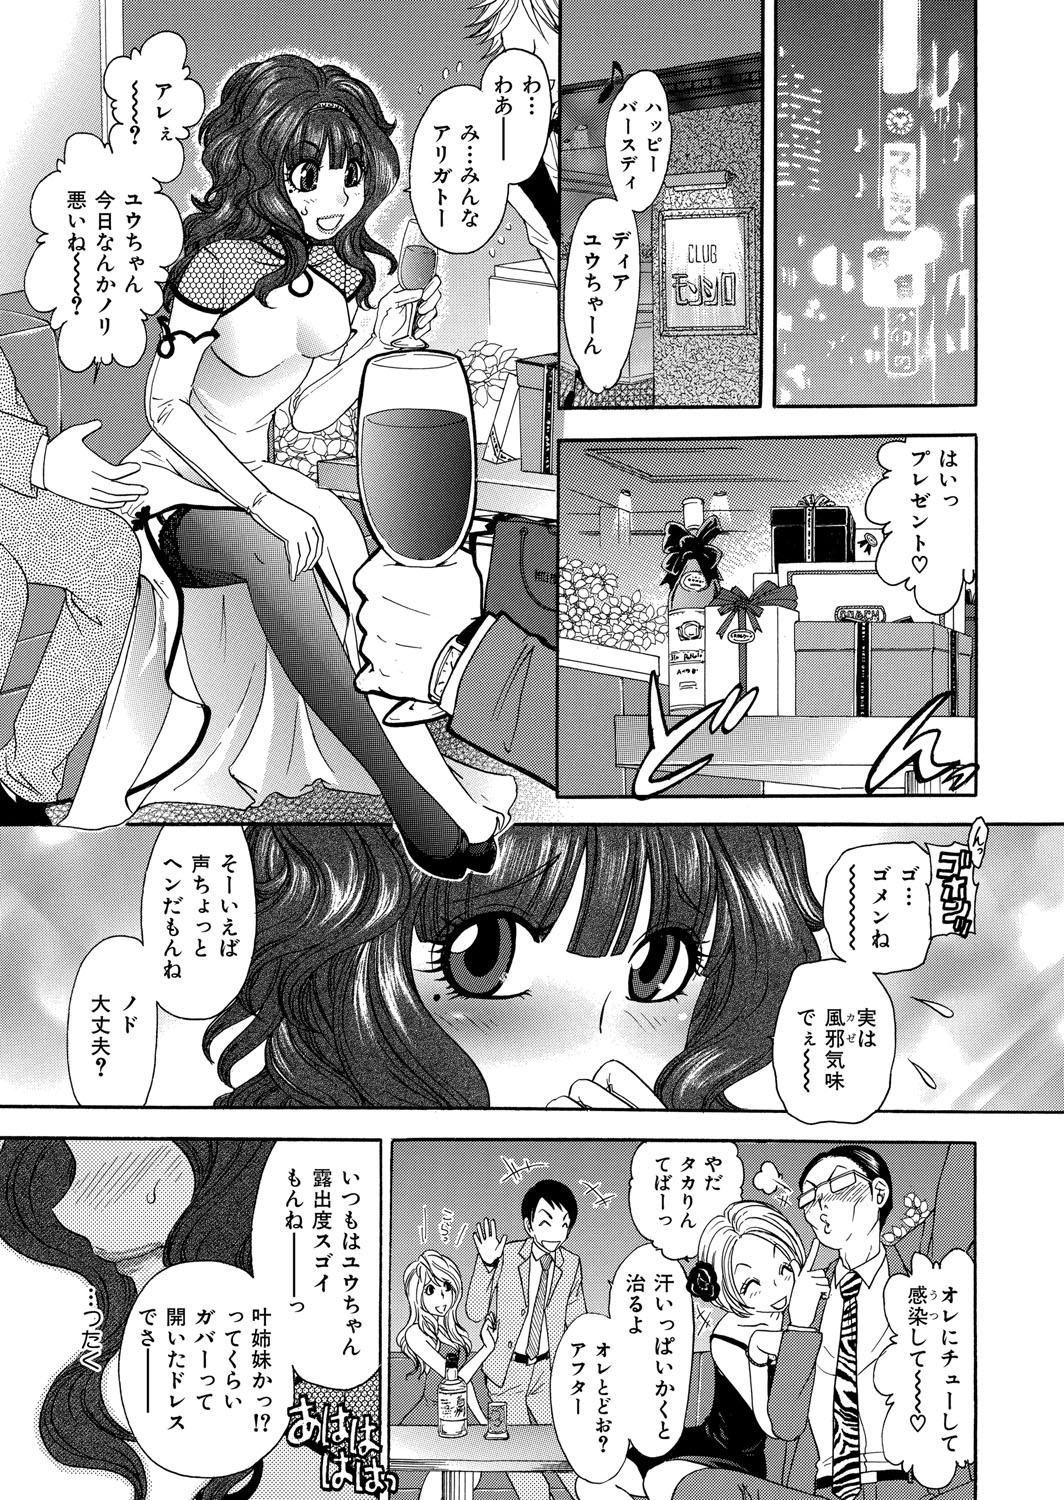 Nasty Free Porn Himitsu no Cabajou-kun Anime - Page 2